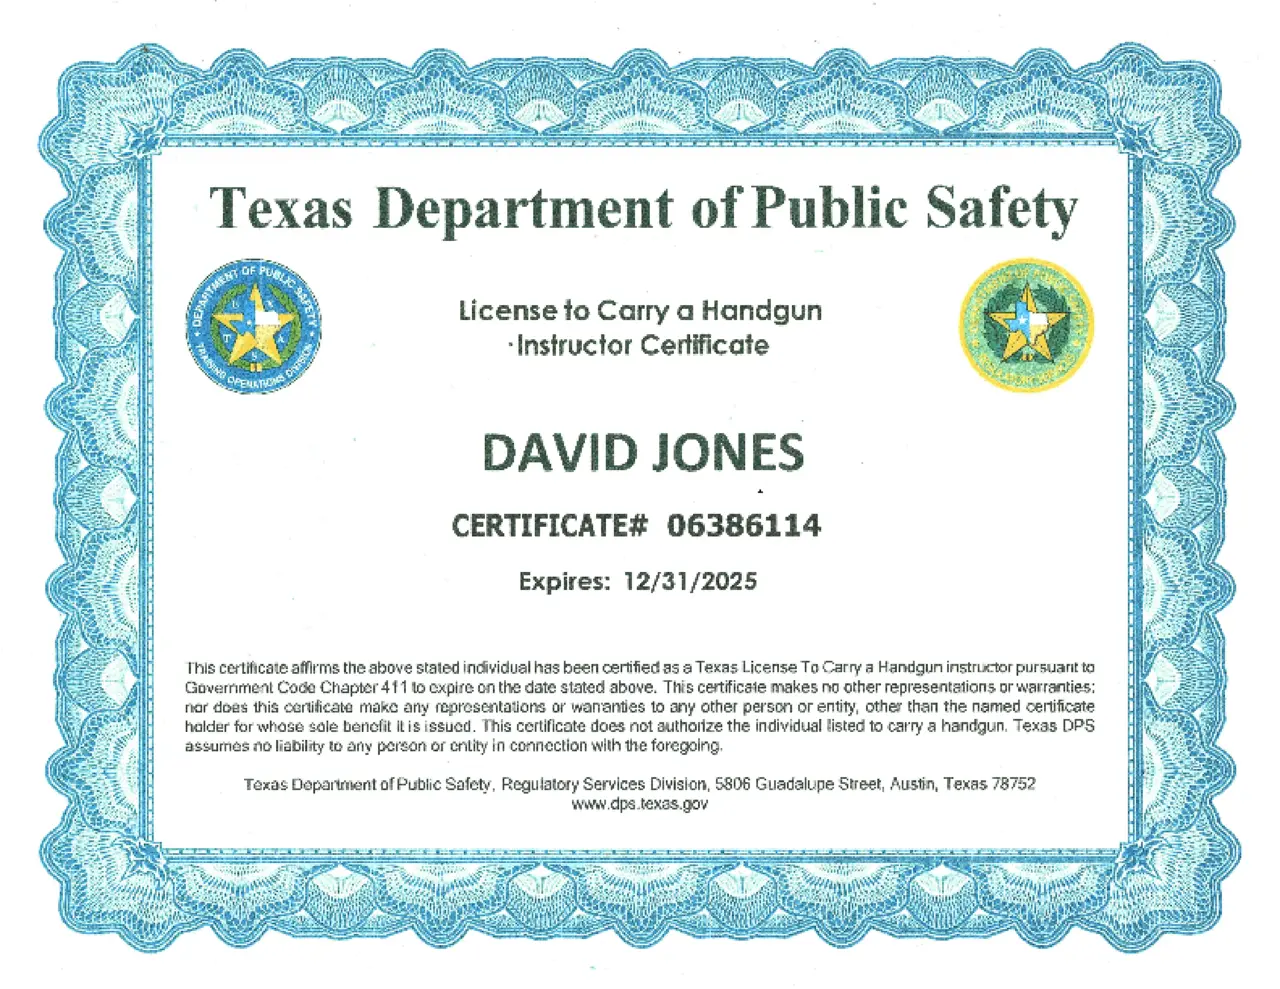 Certificates for David Jones